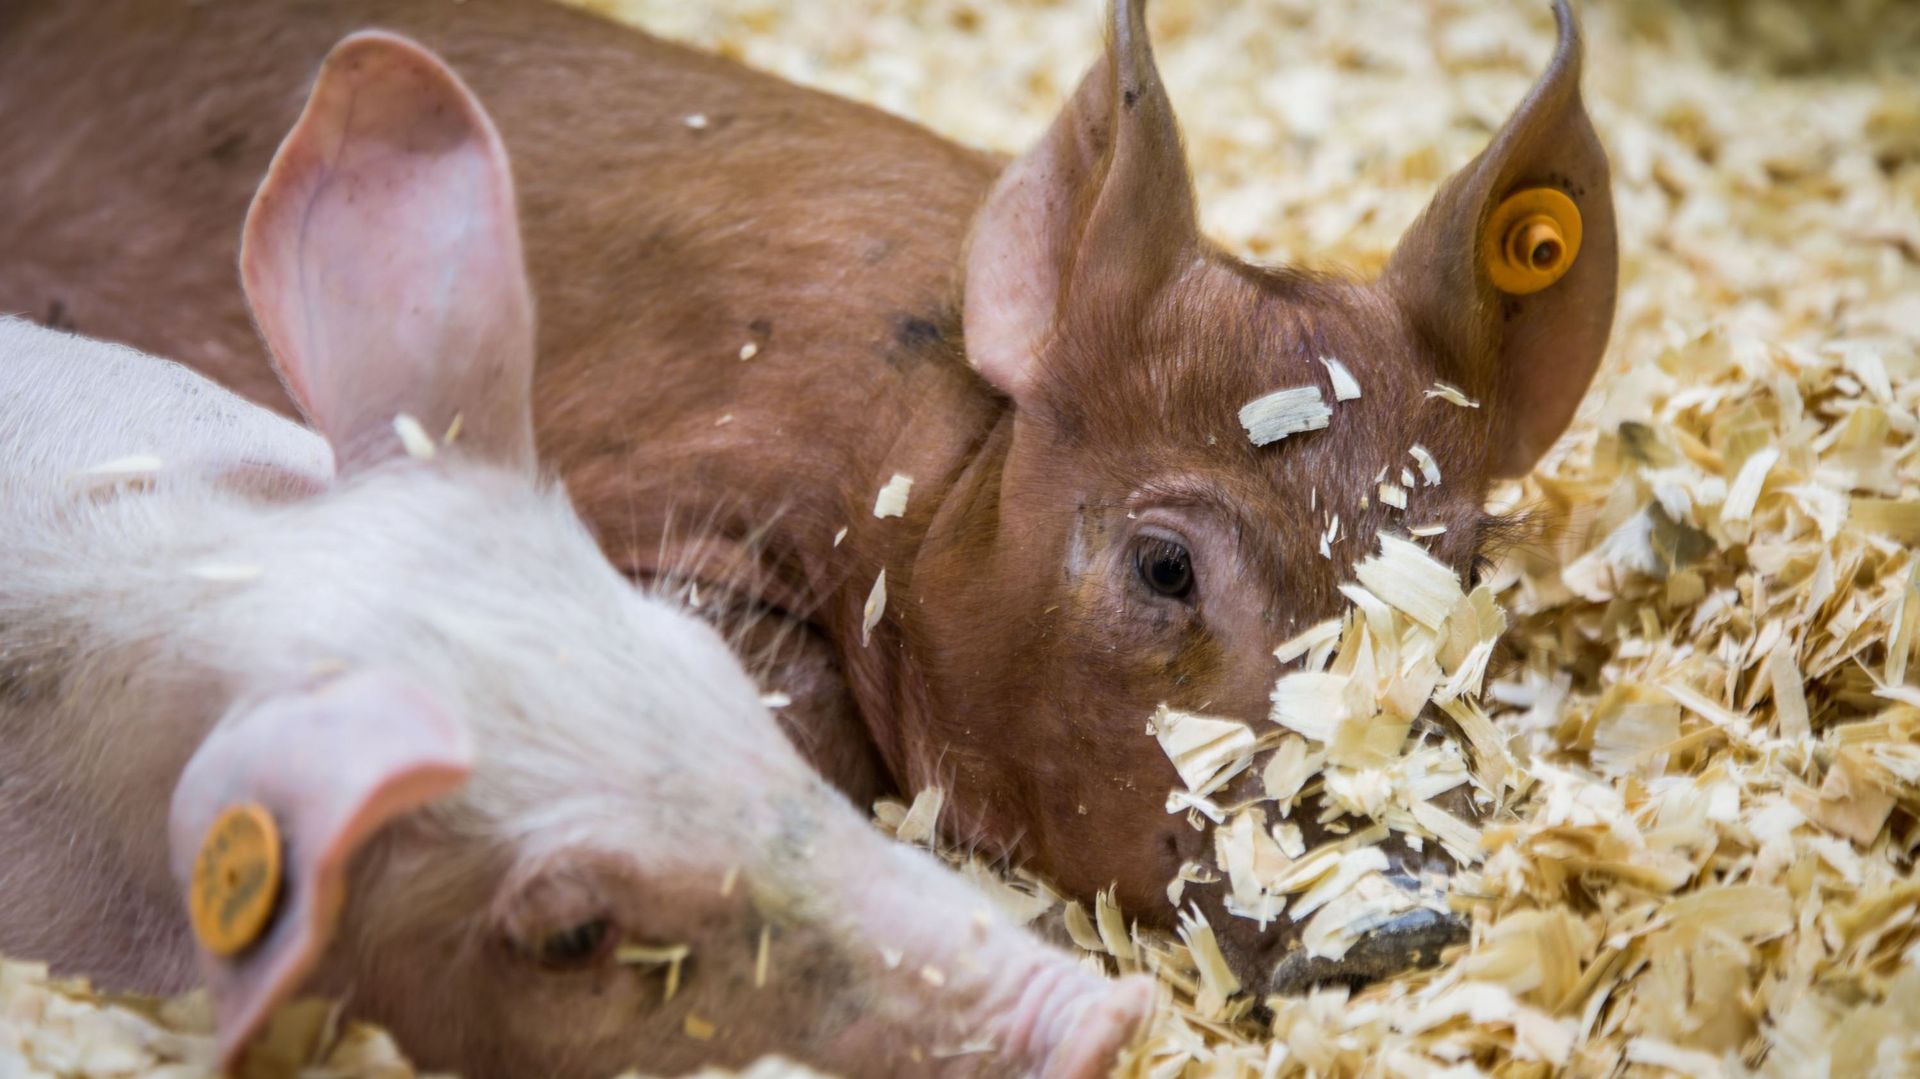 Peste porcine: trois nouveaux pays suspendent leur importation de porc belge